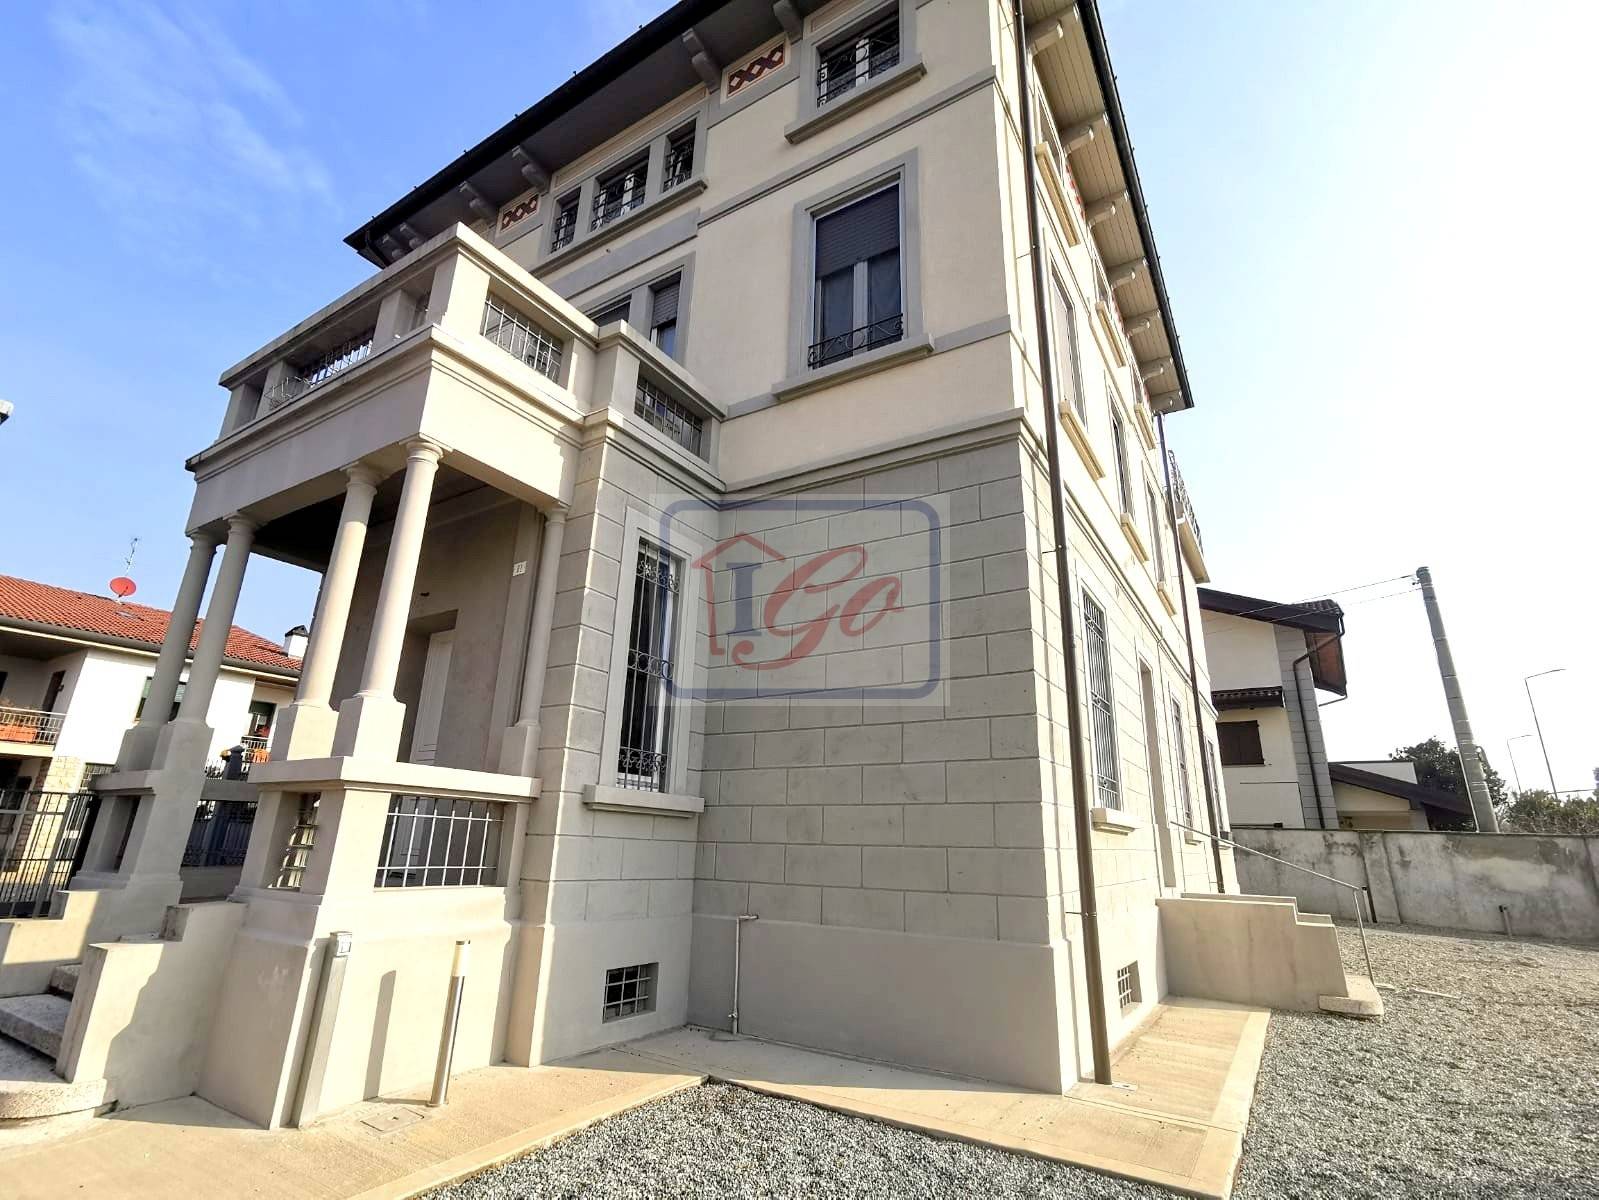 Villa in vendita a Capriate San Gervasio, 2 locali, prezzo € 165.000 | PortaleAgenzieImmobiliari.it